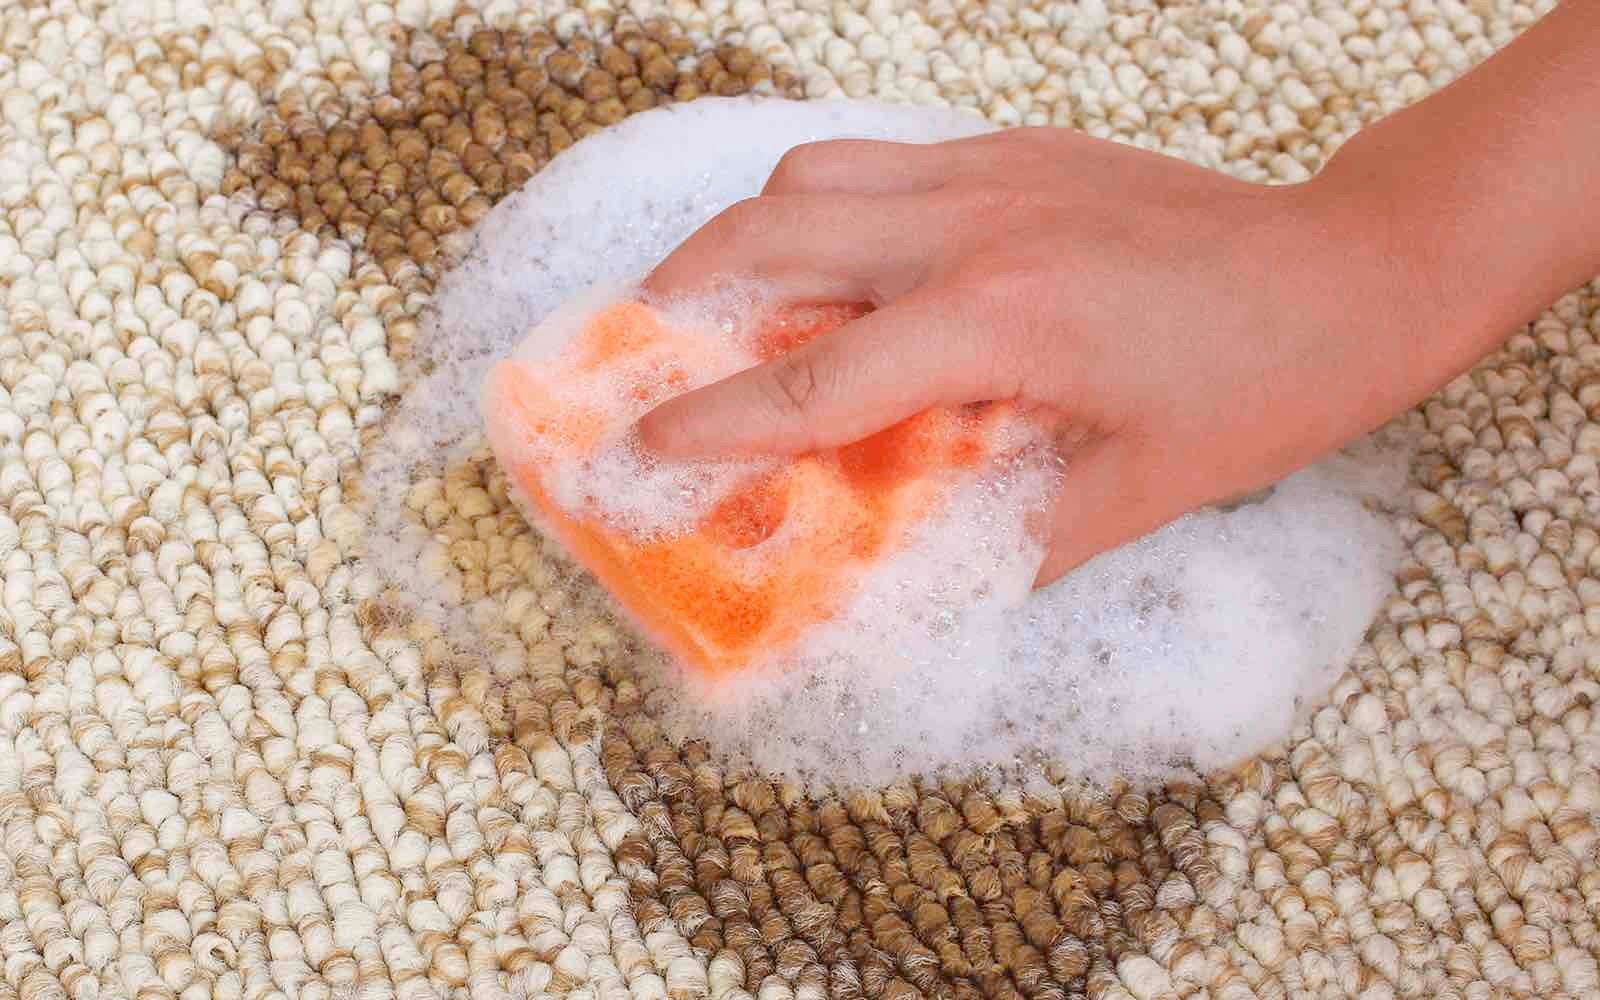 Make Up aus Teppich entfernen - Mann wischt mit Schwamm Flecken aus Teppich